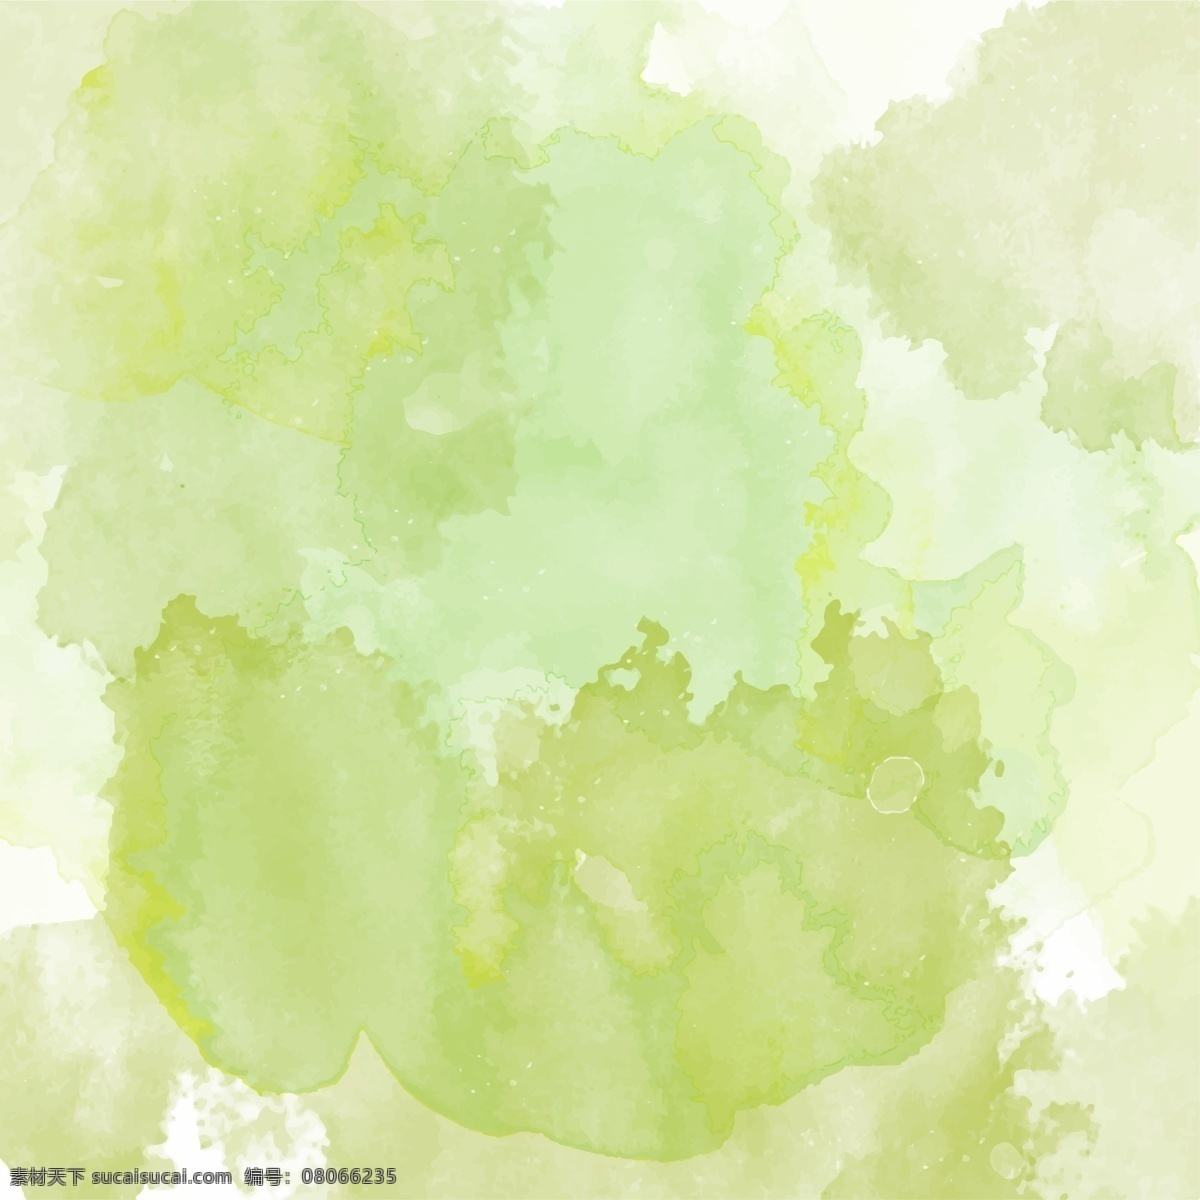 背景 绿色 水彩 纹理 抽象背景 抽象 肌理 绘画 艺术 色彩 水墨 画家 手绘 材料 抽象造型 污渍 表面 水彩画 手漆 质感